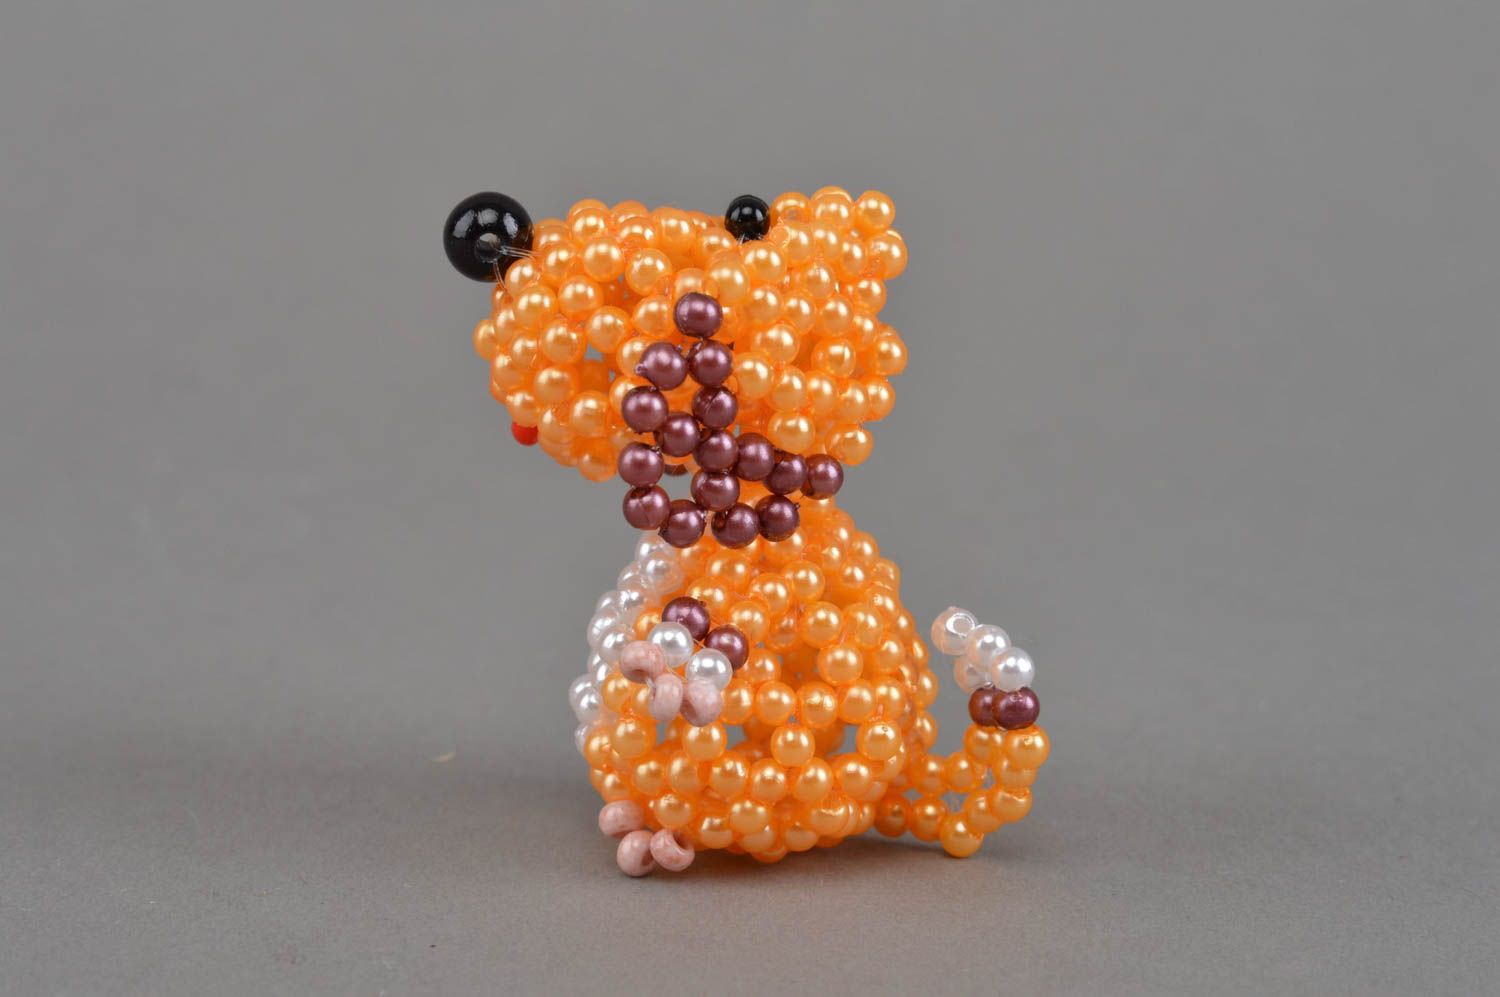 Deko Figurine aus Glasperlen in Orange mit Perlen Hund grell interessant schön foto 4